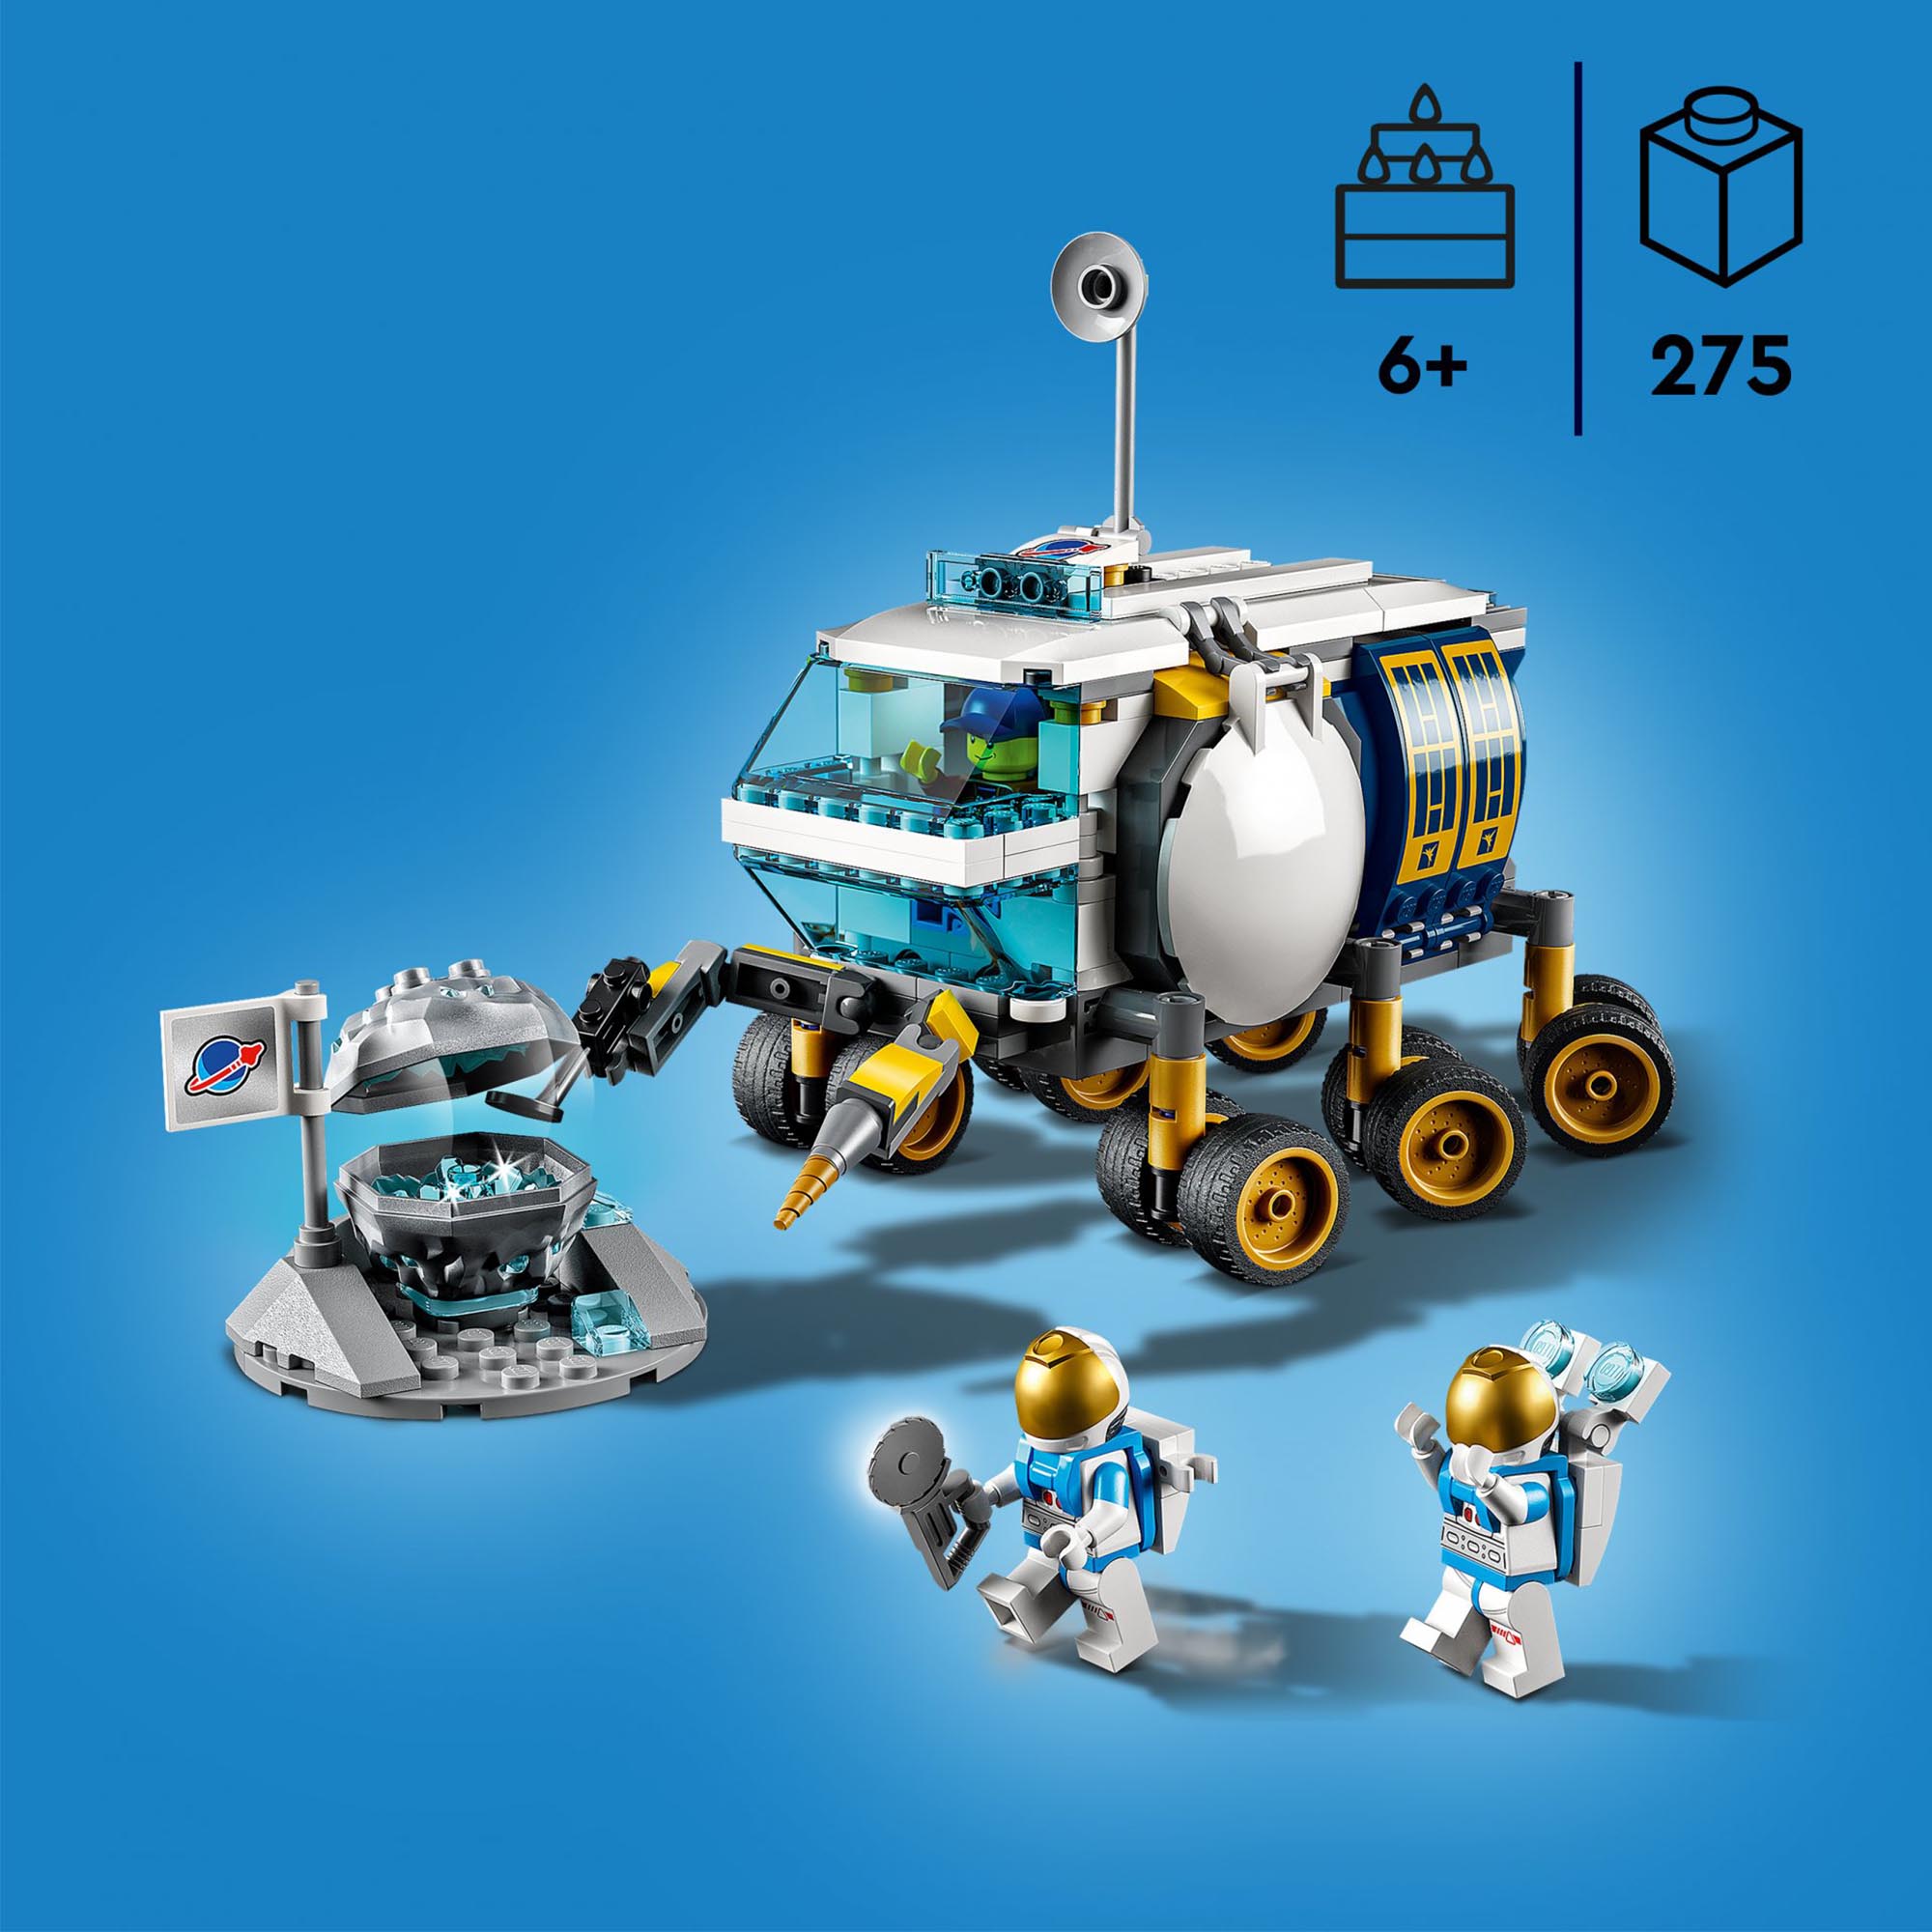 LEGO 60348 City Rover Lunare, Modello di Veicolo Spaziale, Giocattolo per Bambin 60348, , large